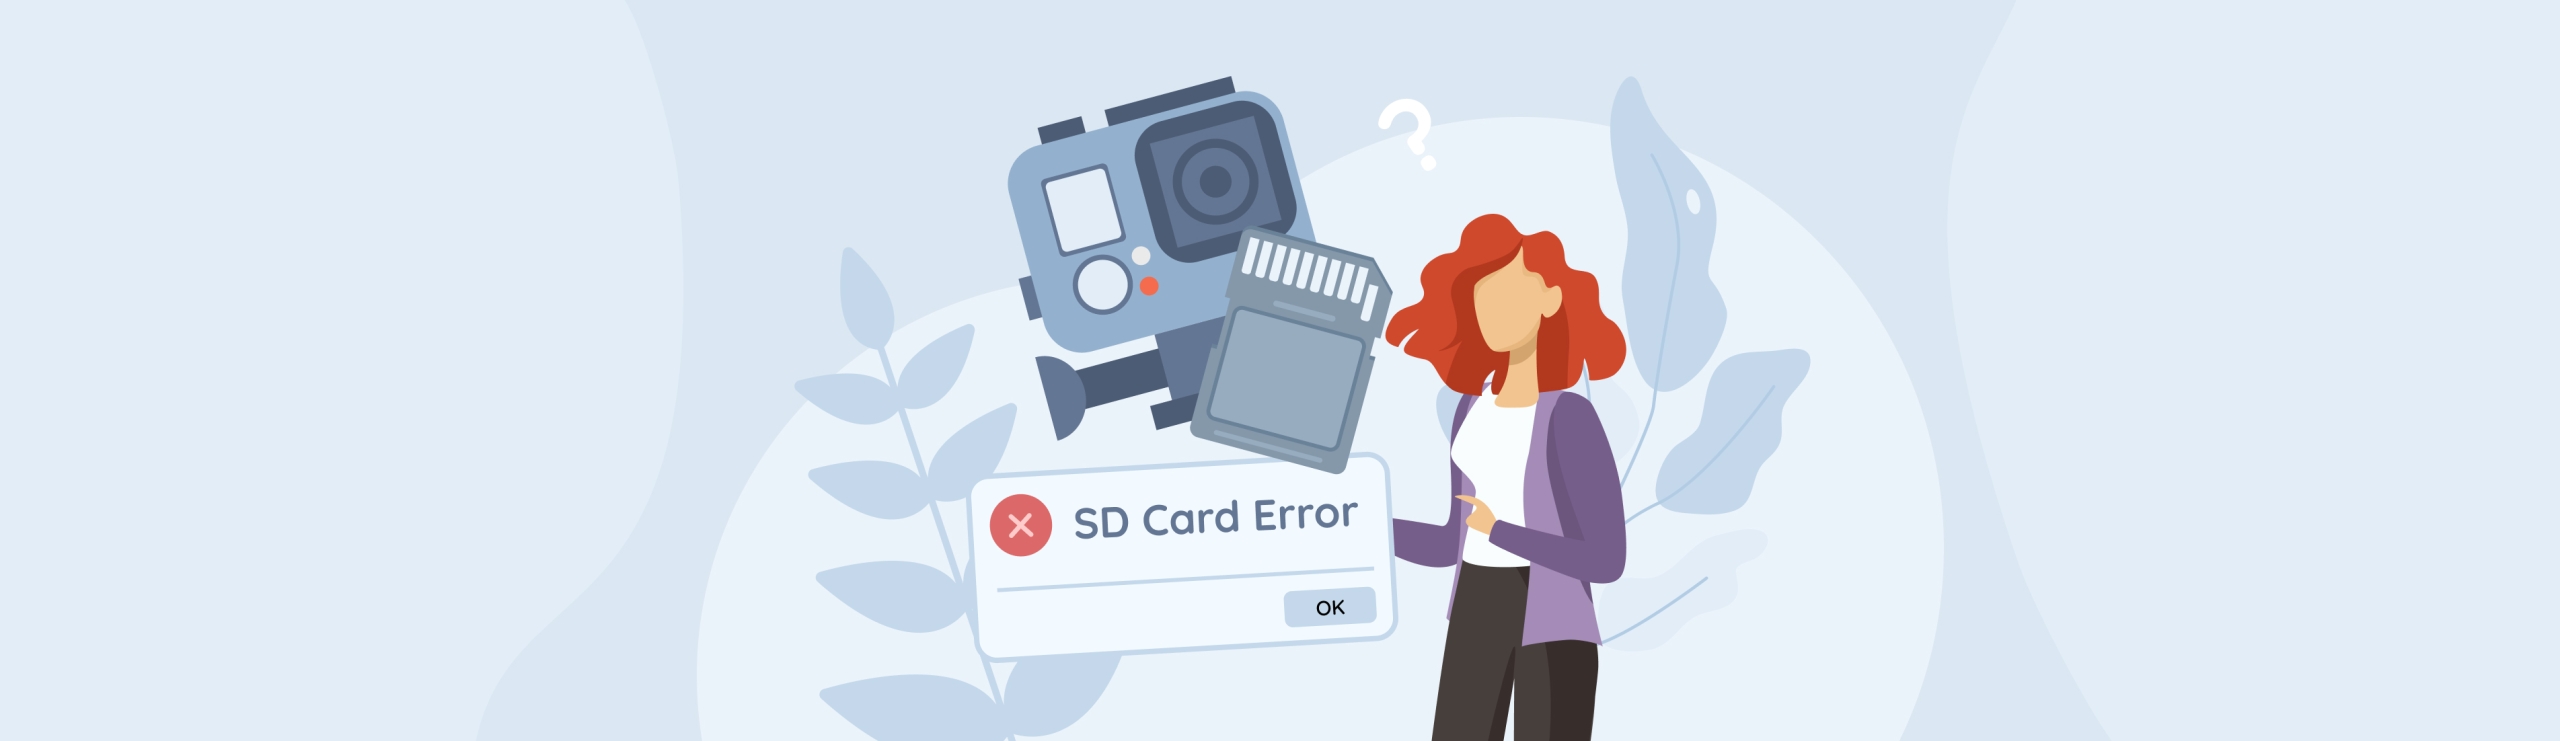 gopro sd card error